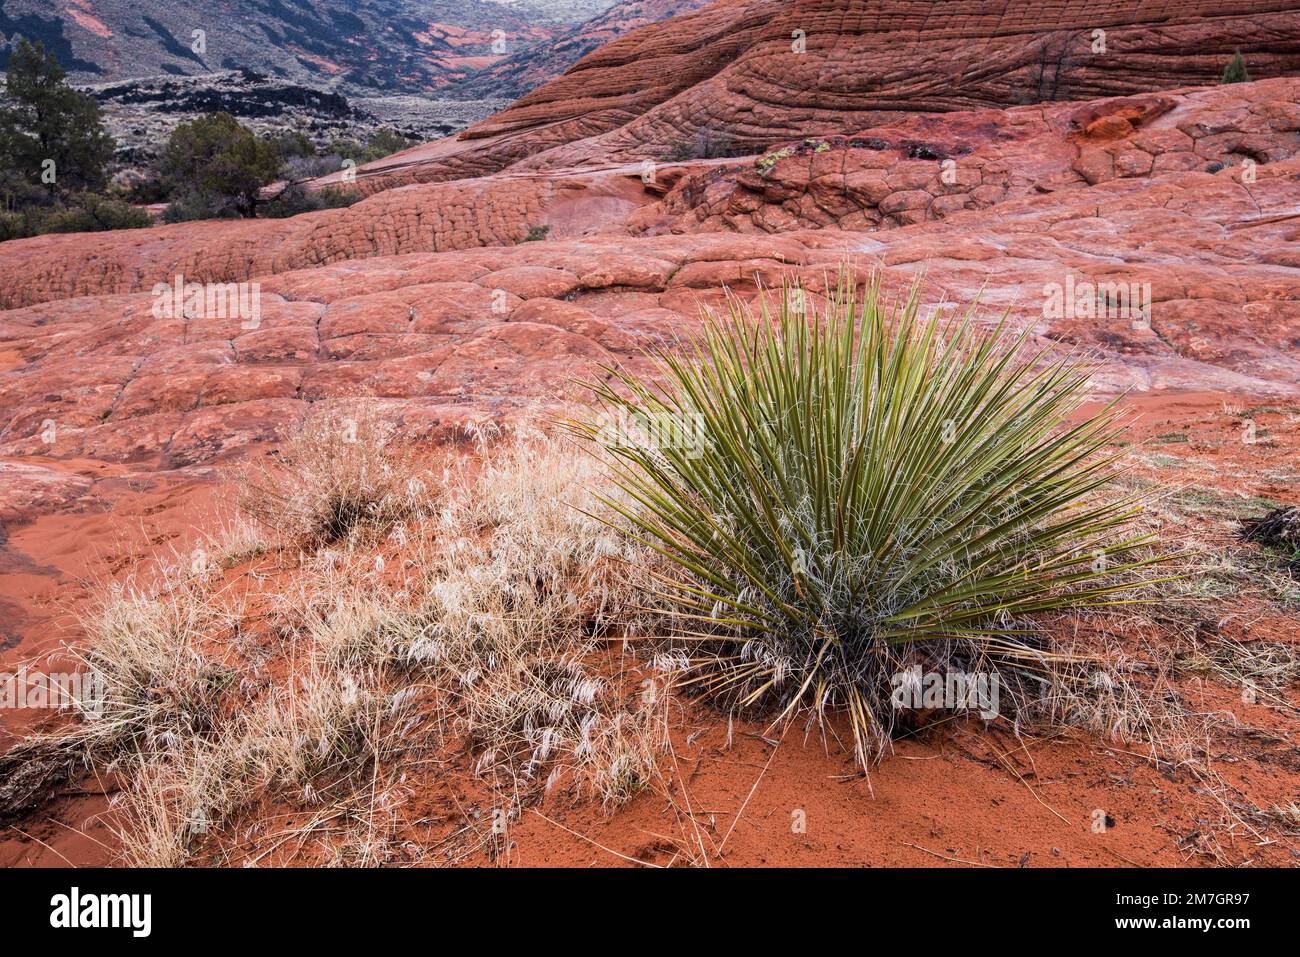 Wüstenpflanzen in rauer, trockener Umgebung im Snow Canyon State Park, Ut. Nur die härtesten Pflanzen können unter diesen Bedingungen überleben. Stockfoto